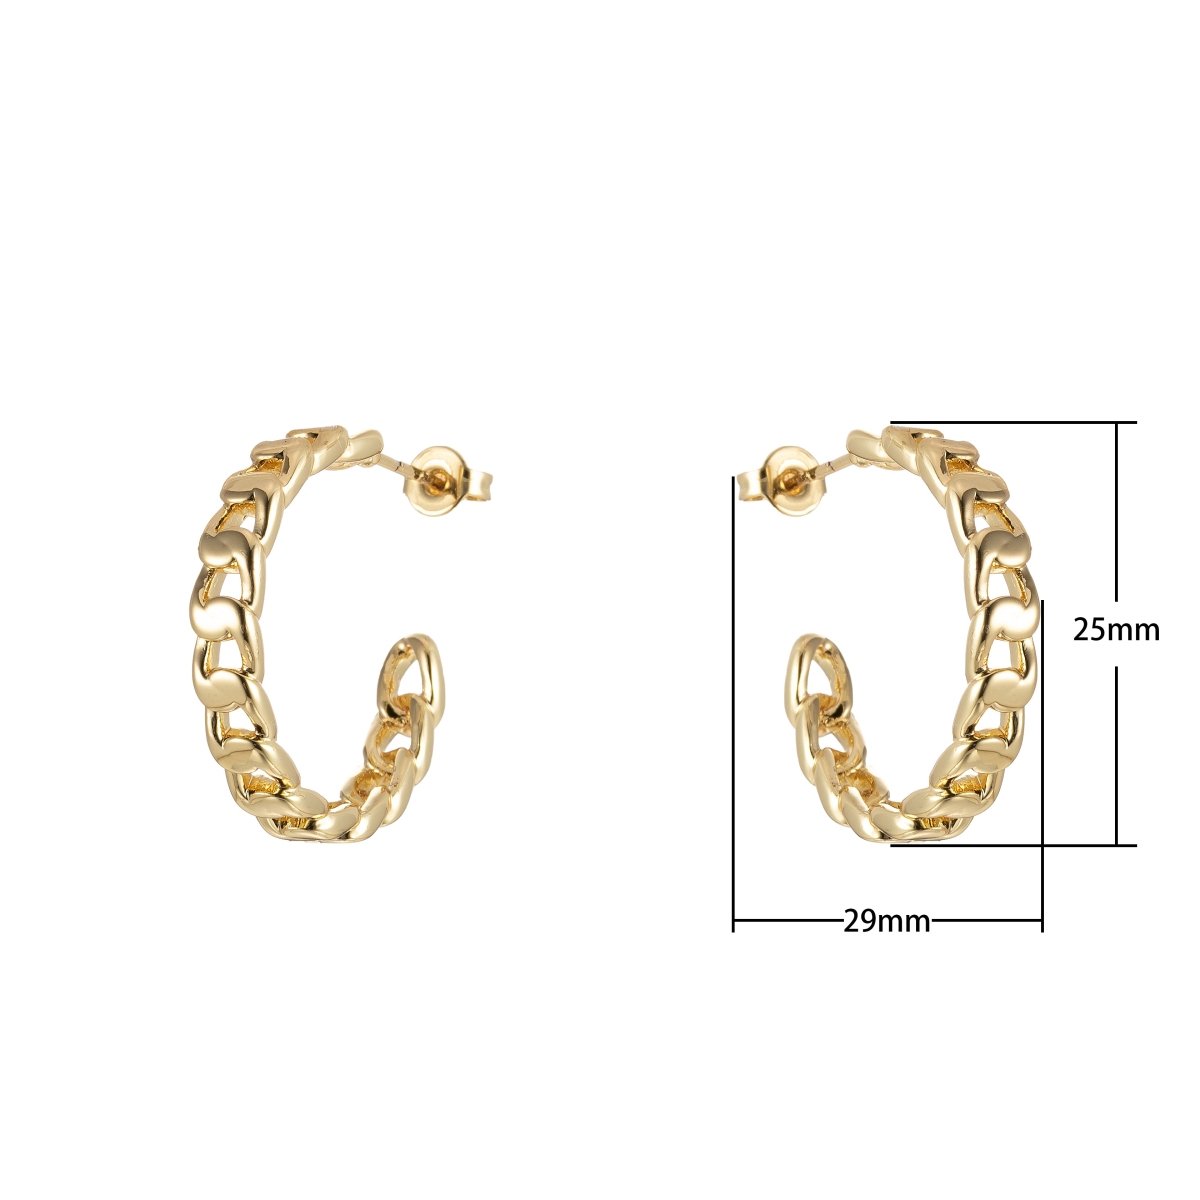 Gold Chain Hoop Earrings, Miami Cuban Chain Hoop Earrings Minimalist Jewelry, Cuban Link Earring, Everyday Earrings P-221 - DLUXCA